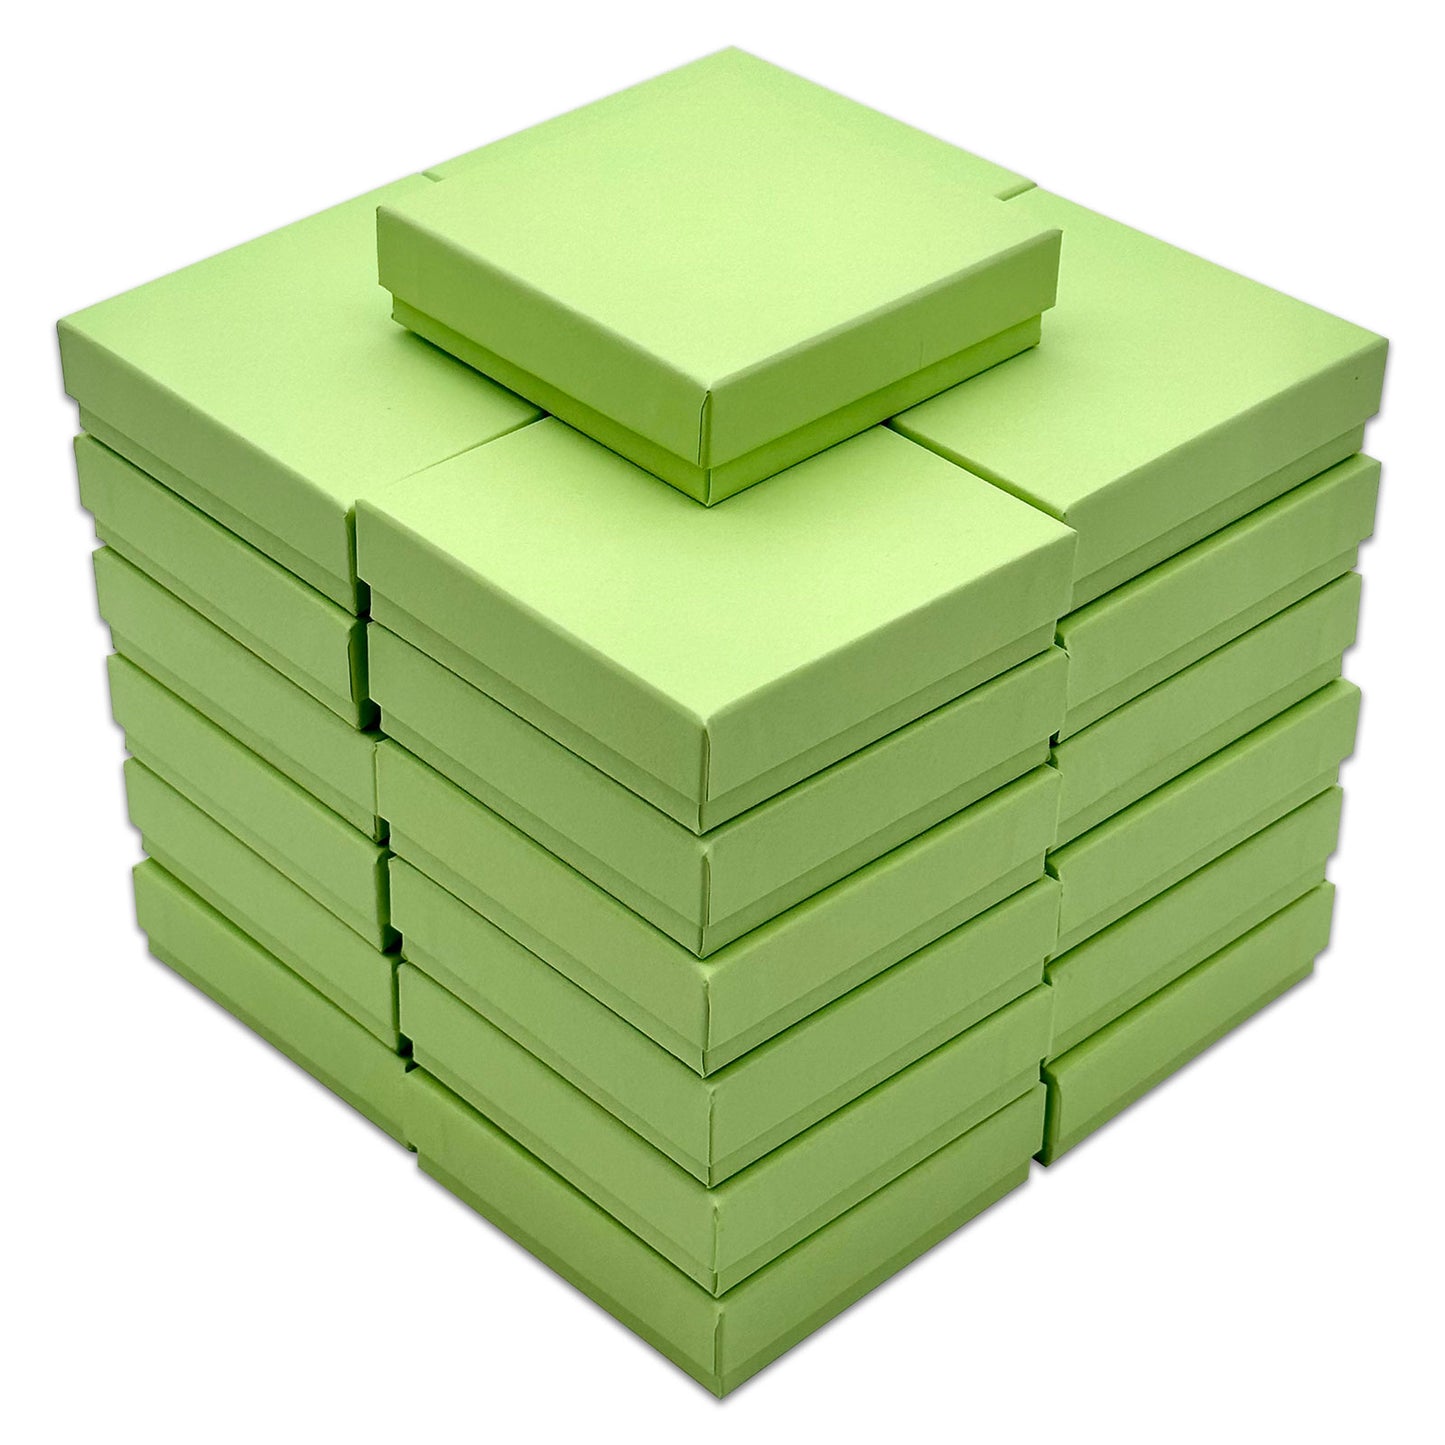 3 1/2" x 3 1/2" x 1" Mint Green Cotton Filled Paper Box